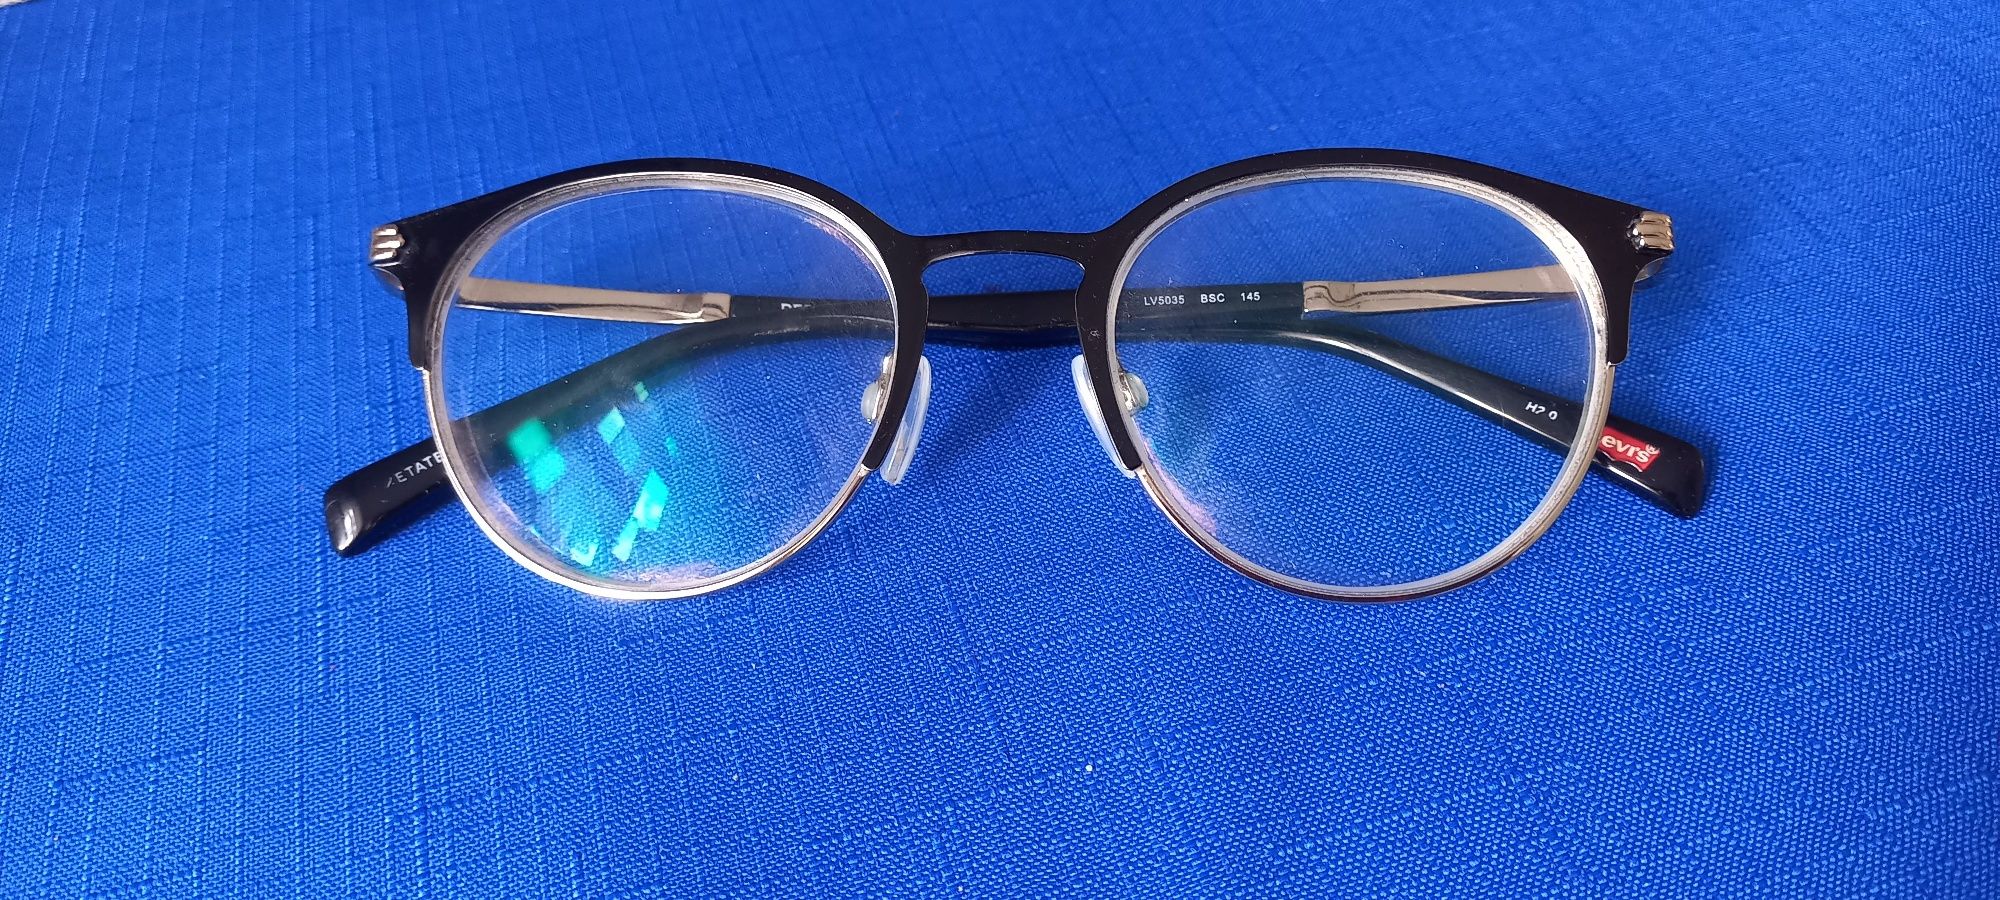 Oprawki do okularów korekcyjnych,  LEVIS